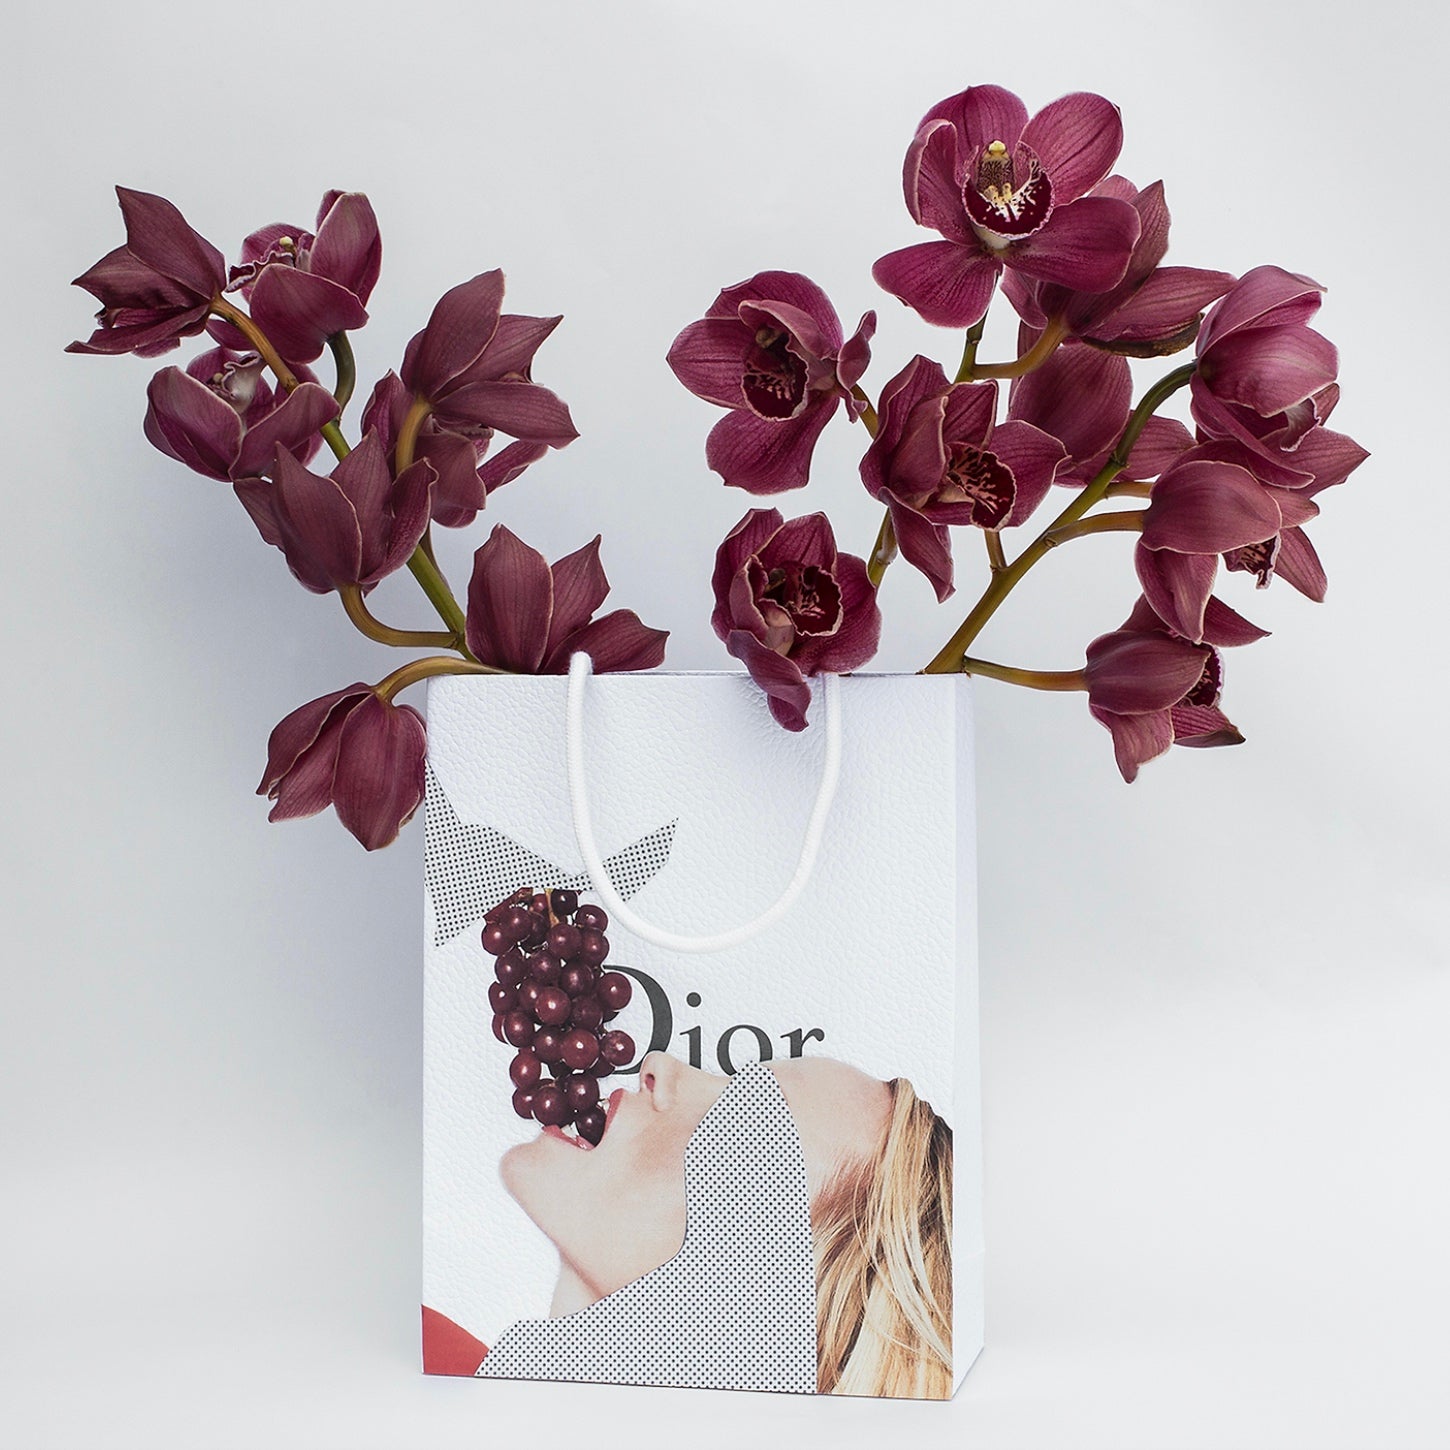 Bagged It (Dior/Grapes)